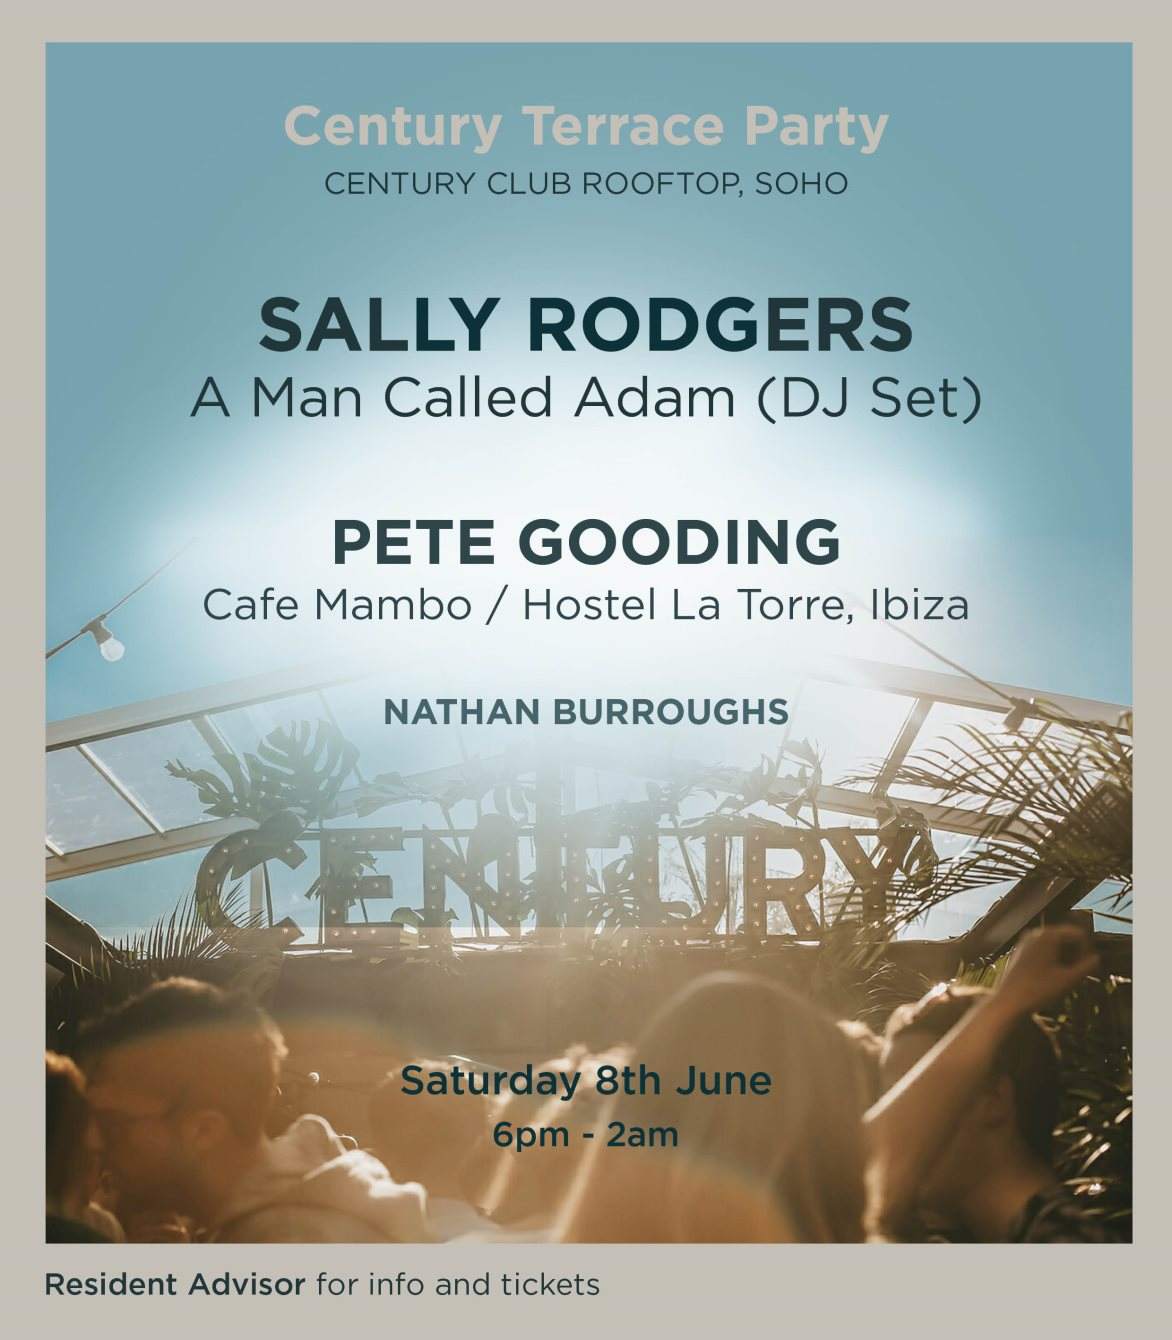 Century Terrace Party - Página frontal